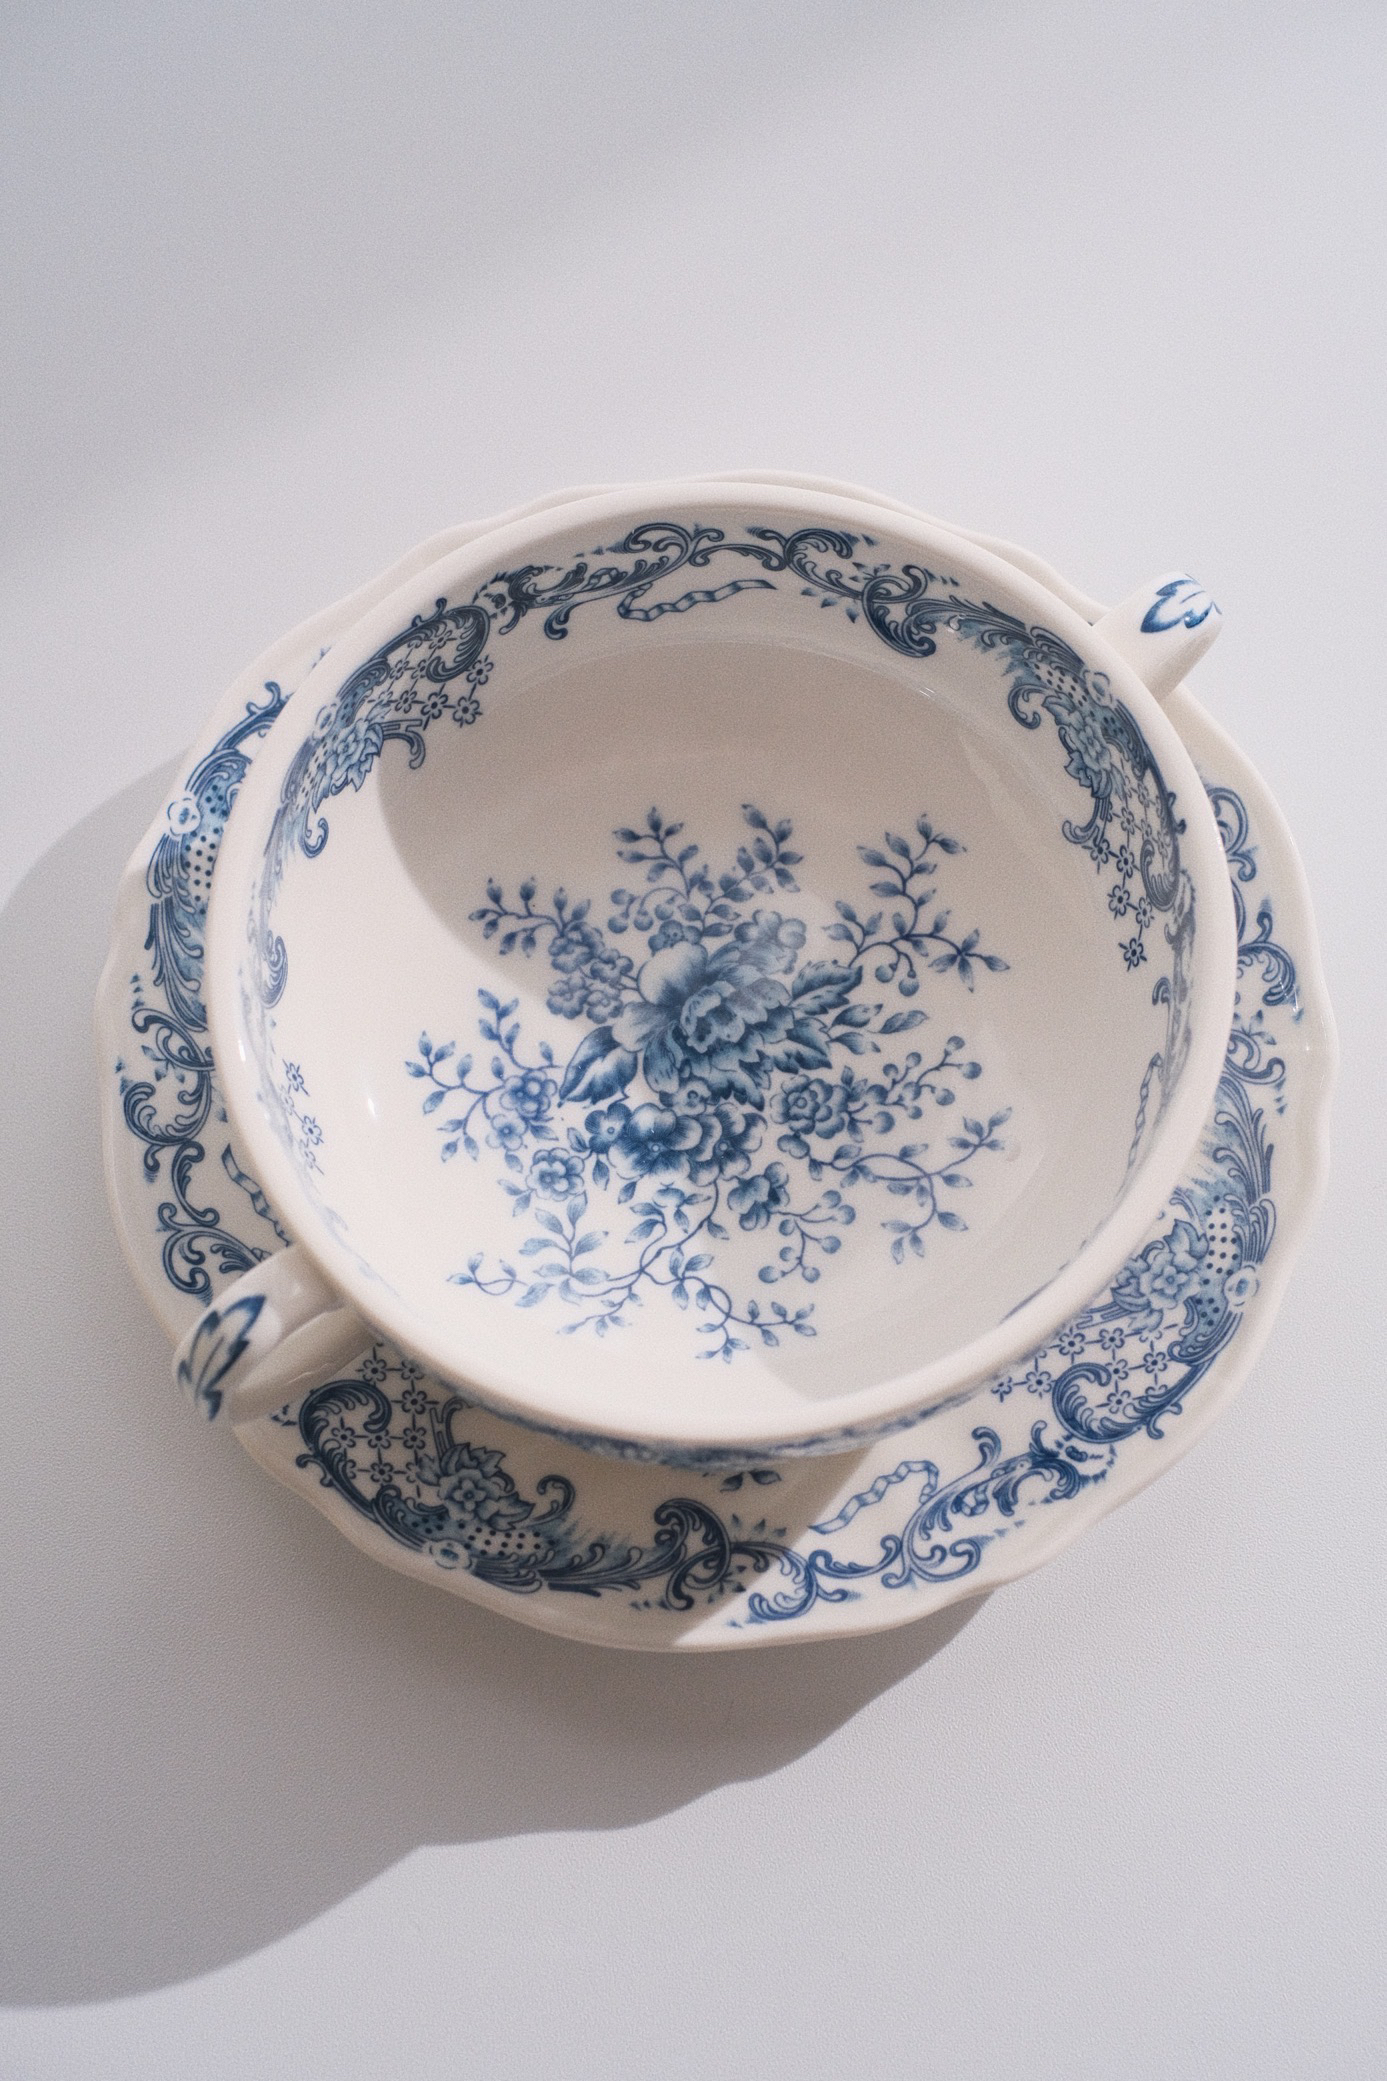 法瓷著名VB器型  出口中古兰花双耳碗碟套装复古白瓷青花咖啡杯